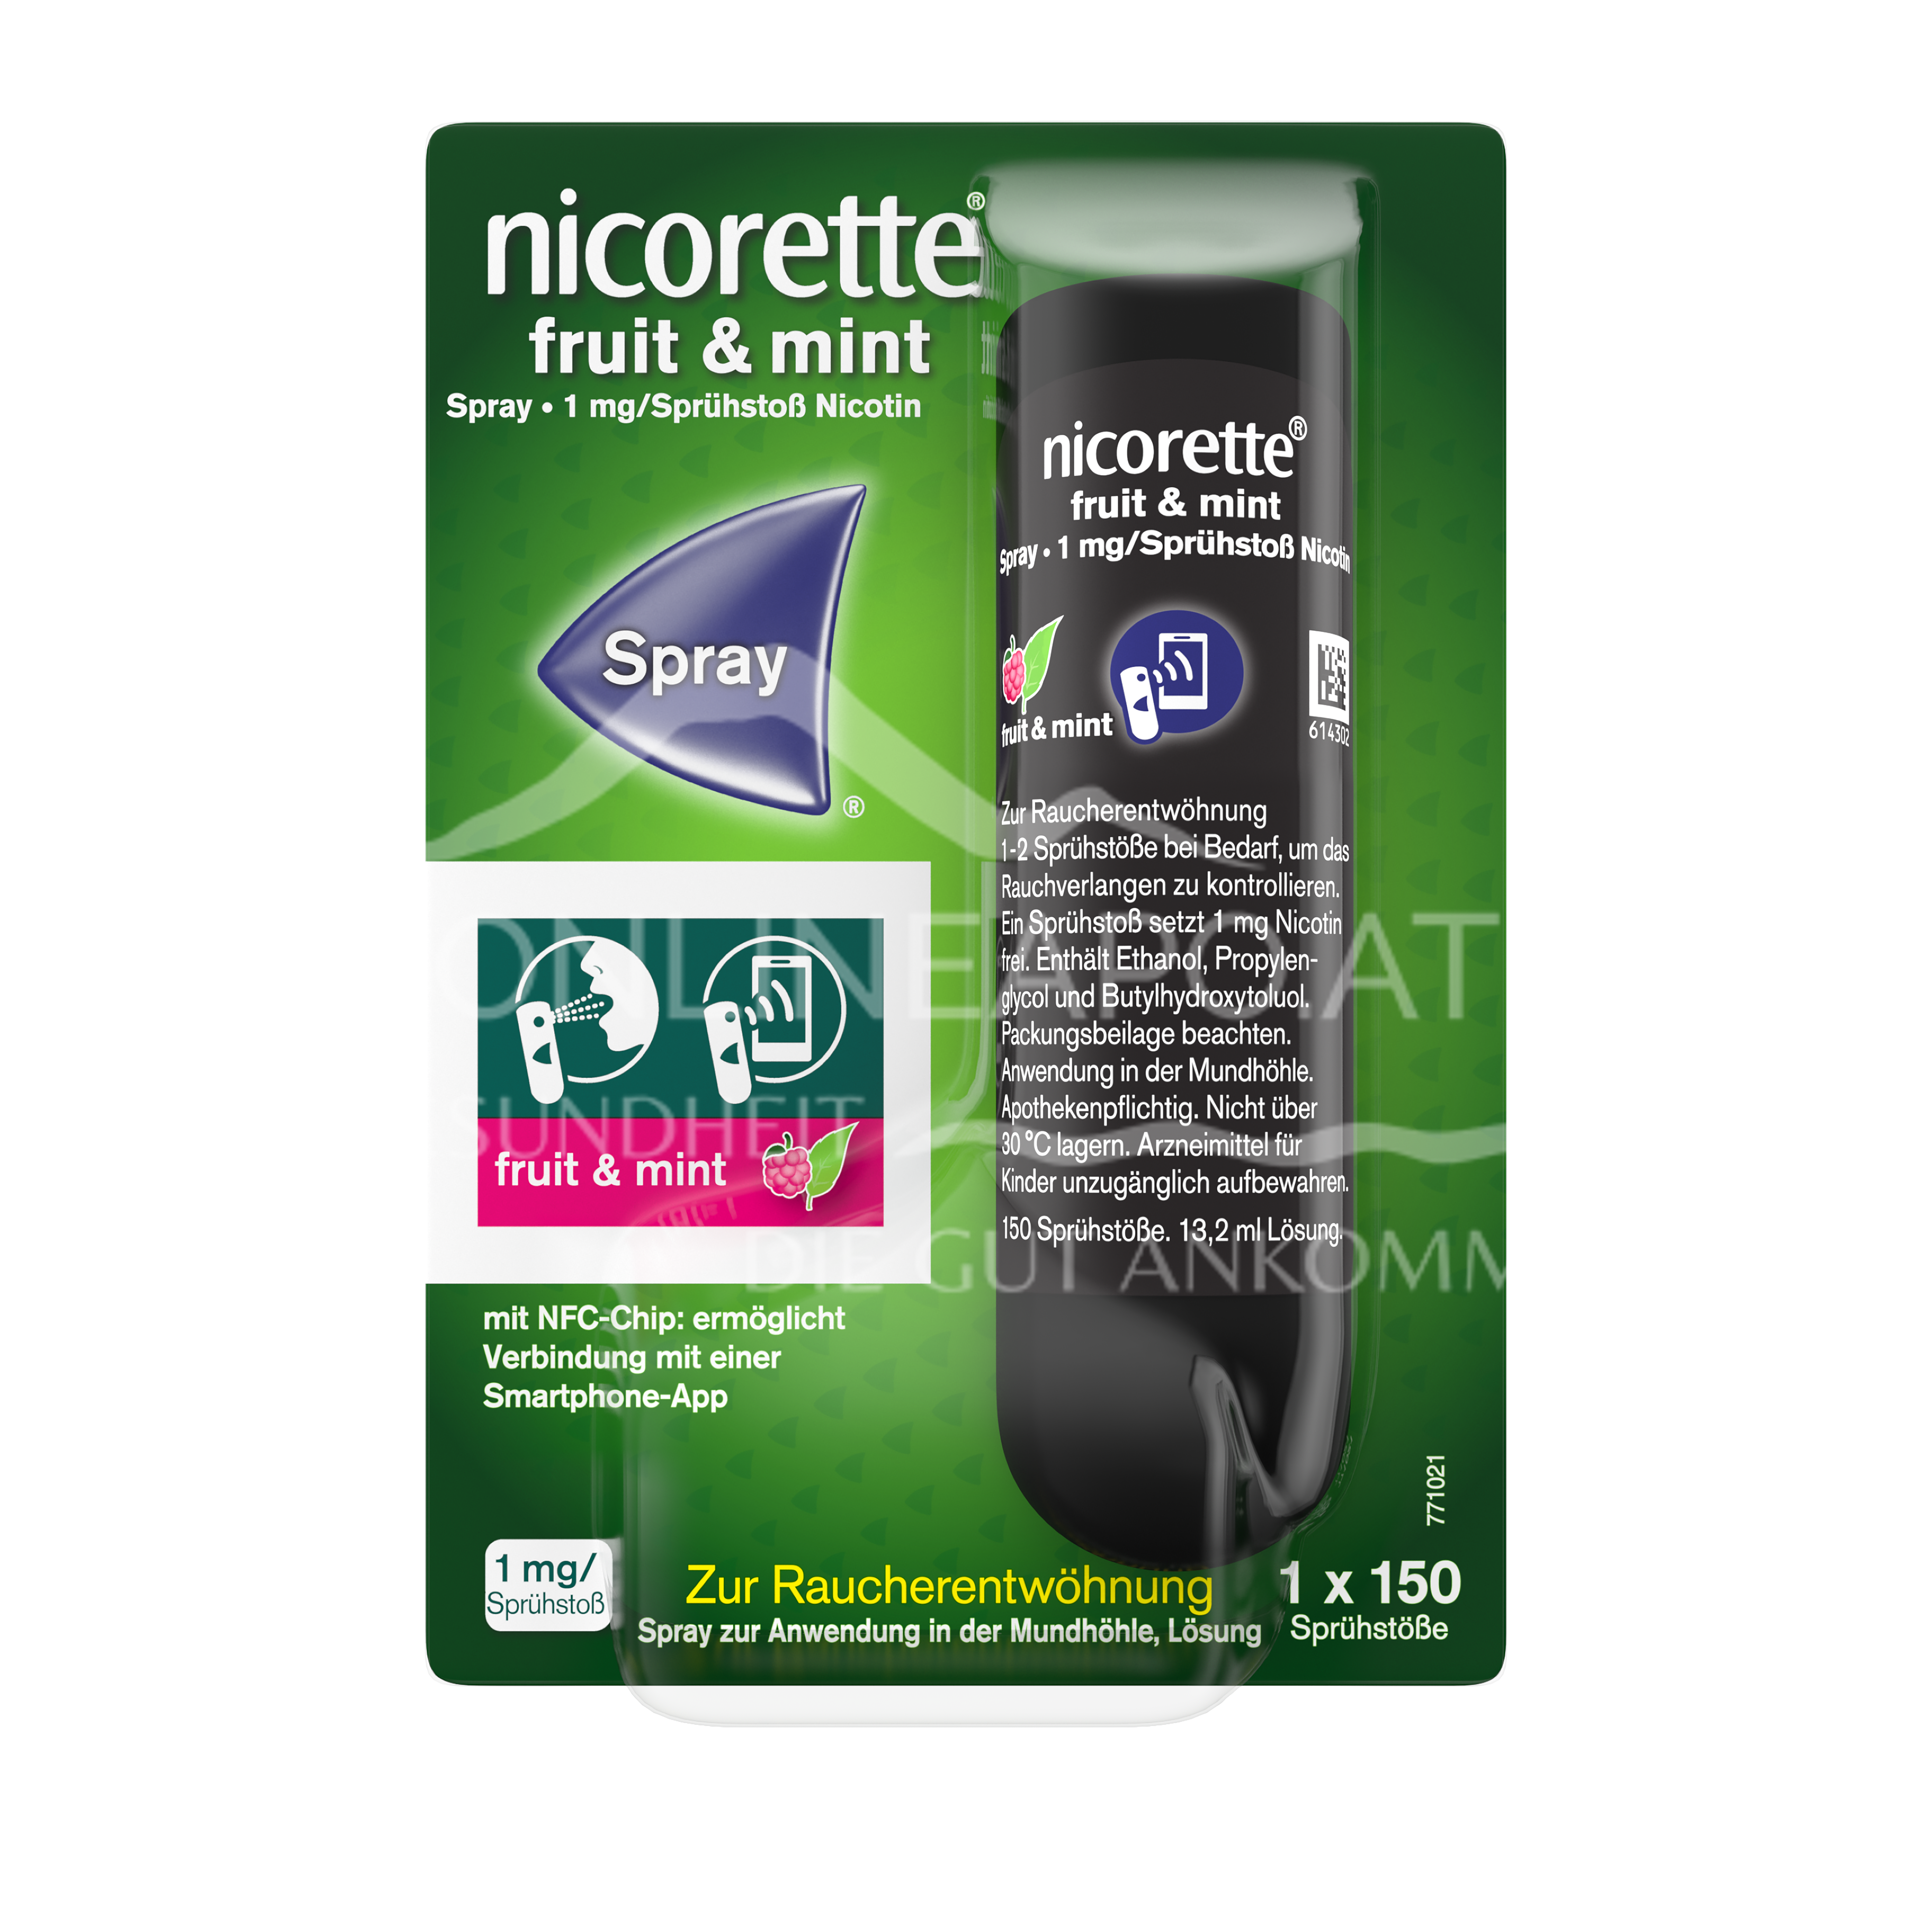 Nicorette Fruit & Mint Spray 1 mg/Sprühstoß Spray zur Anwendung in der Mundhöhle, Lösung